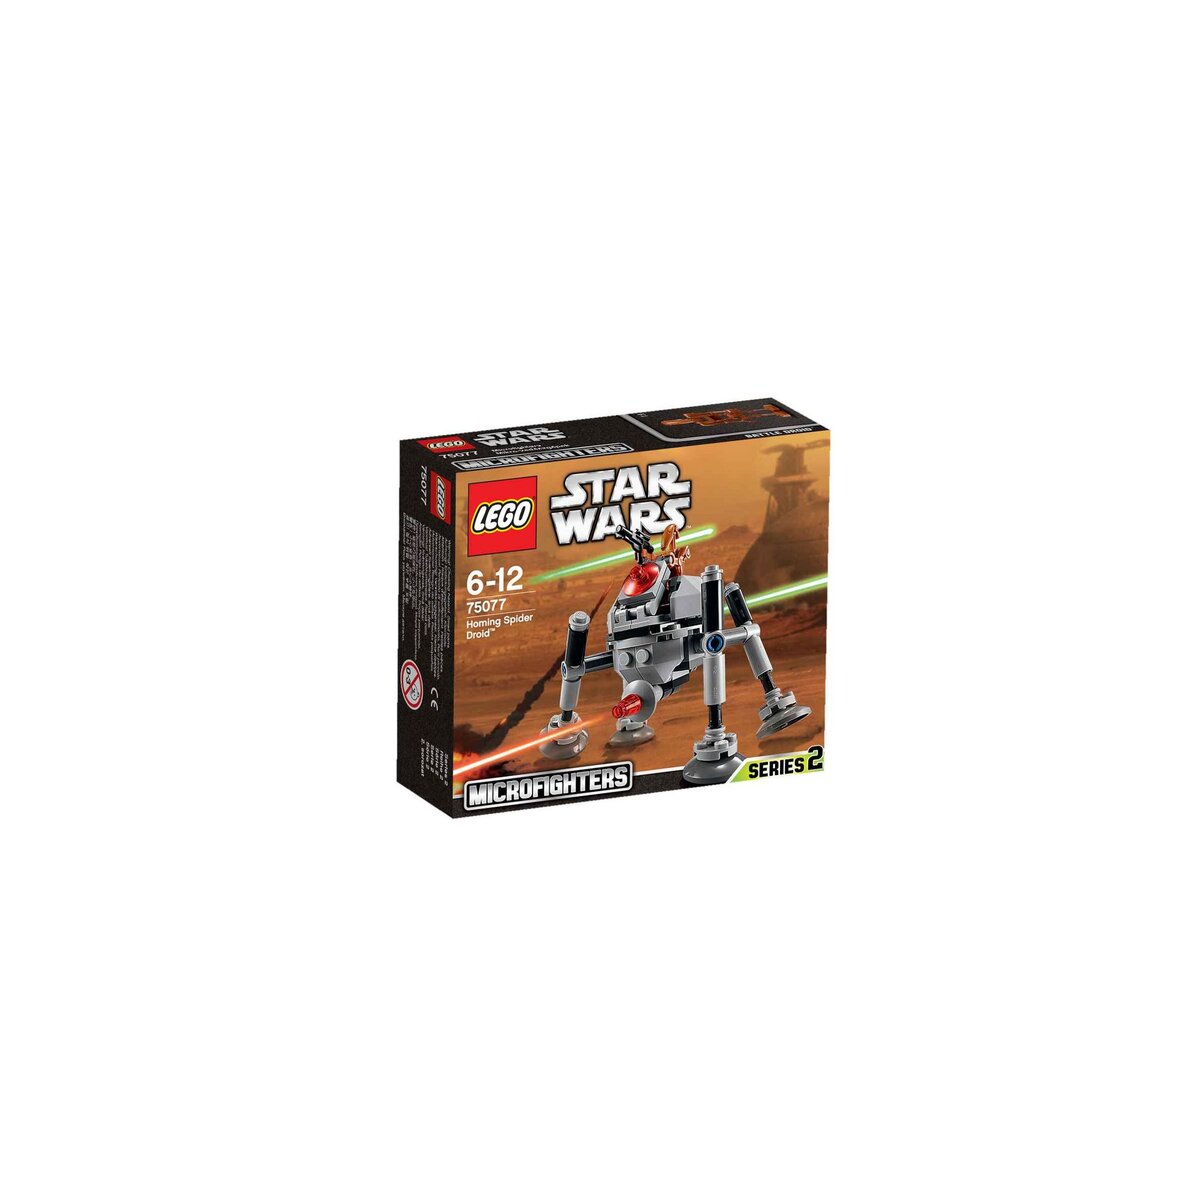 LEGO Star Wars 75077